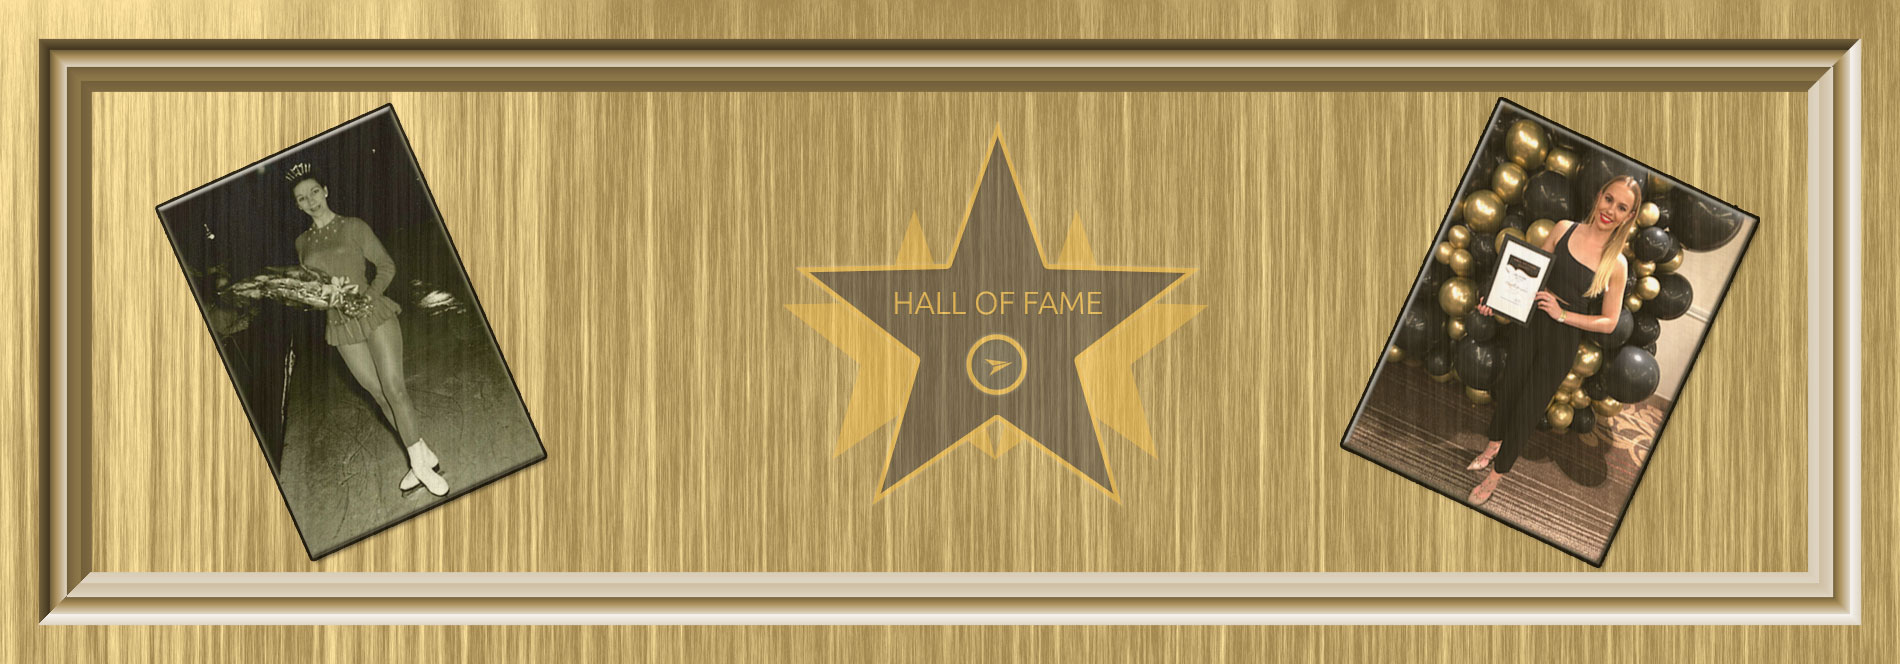 WAISA Hall of Fame